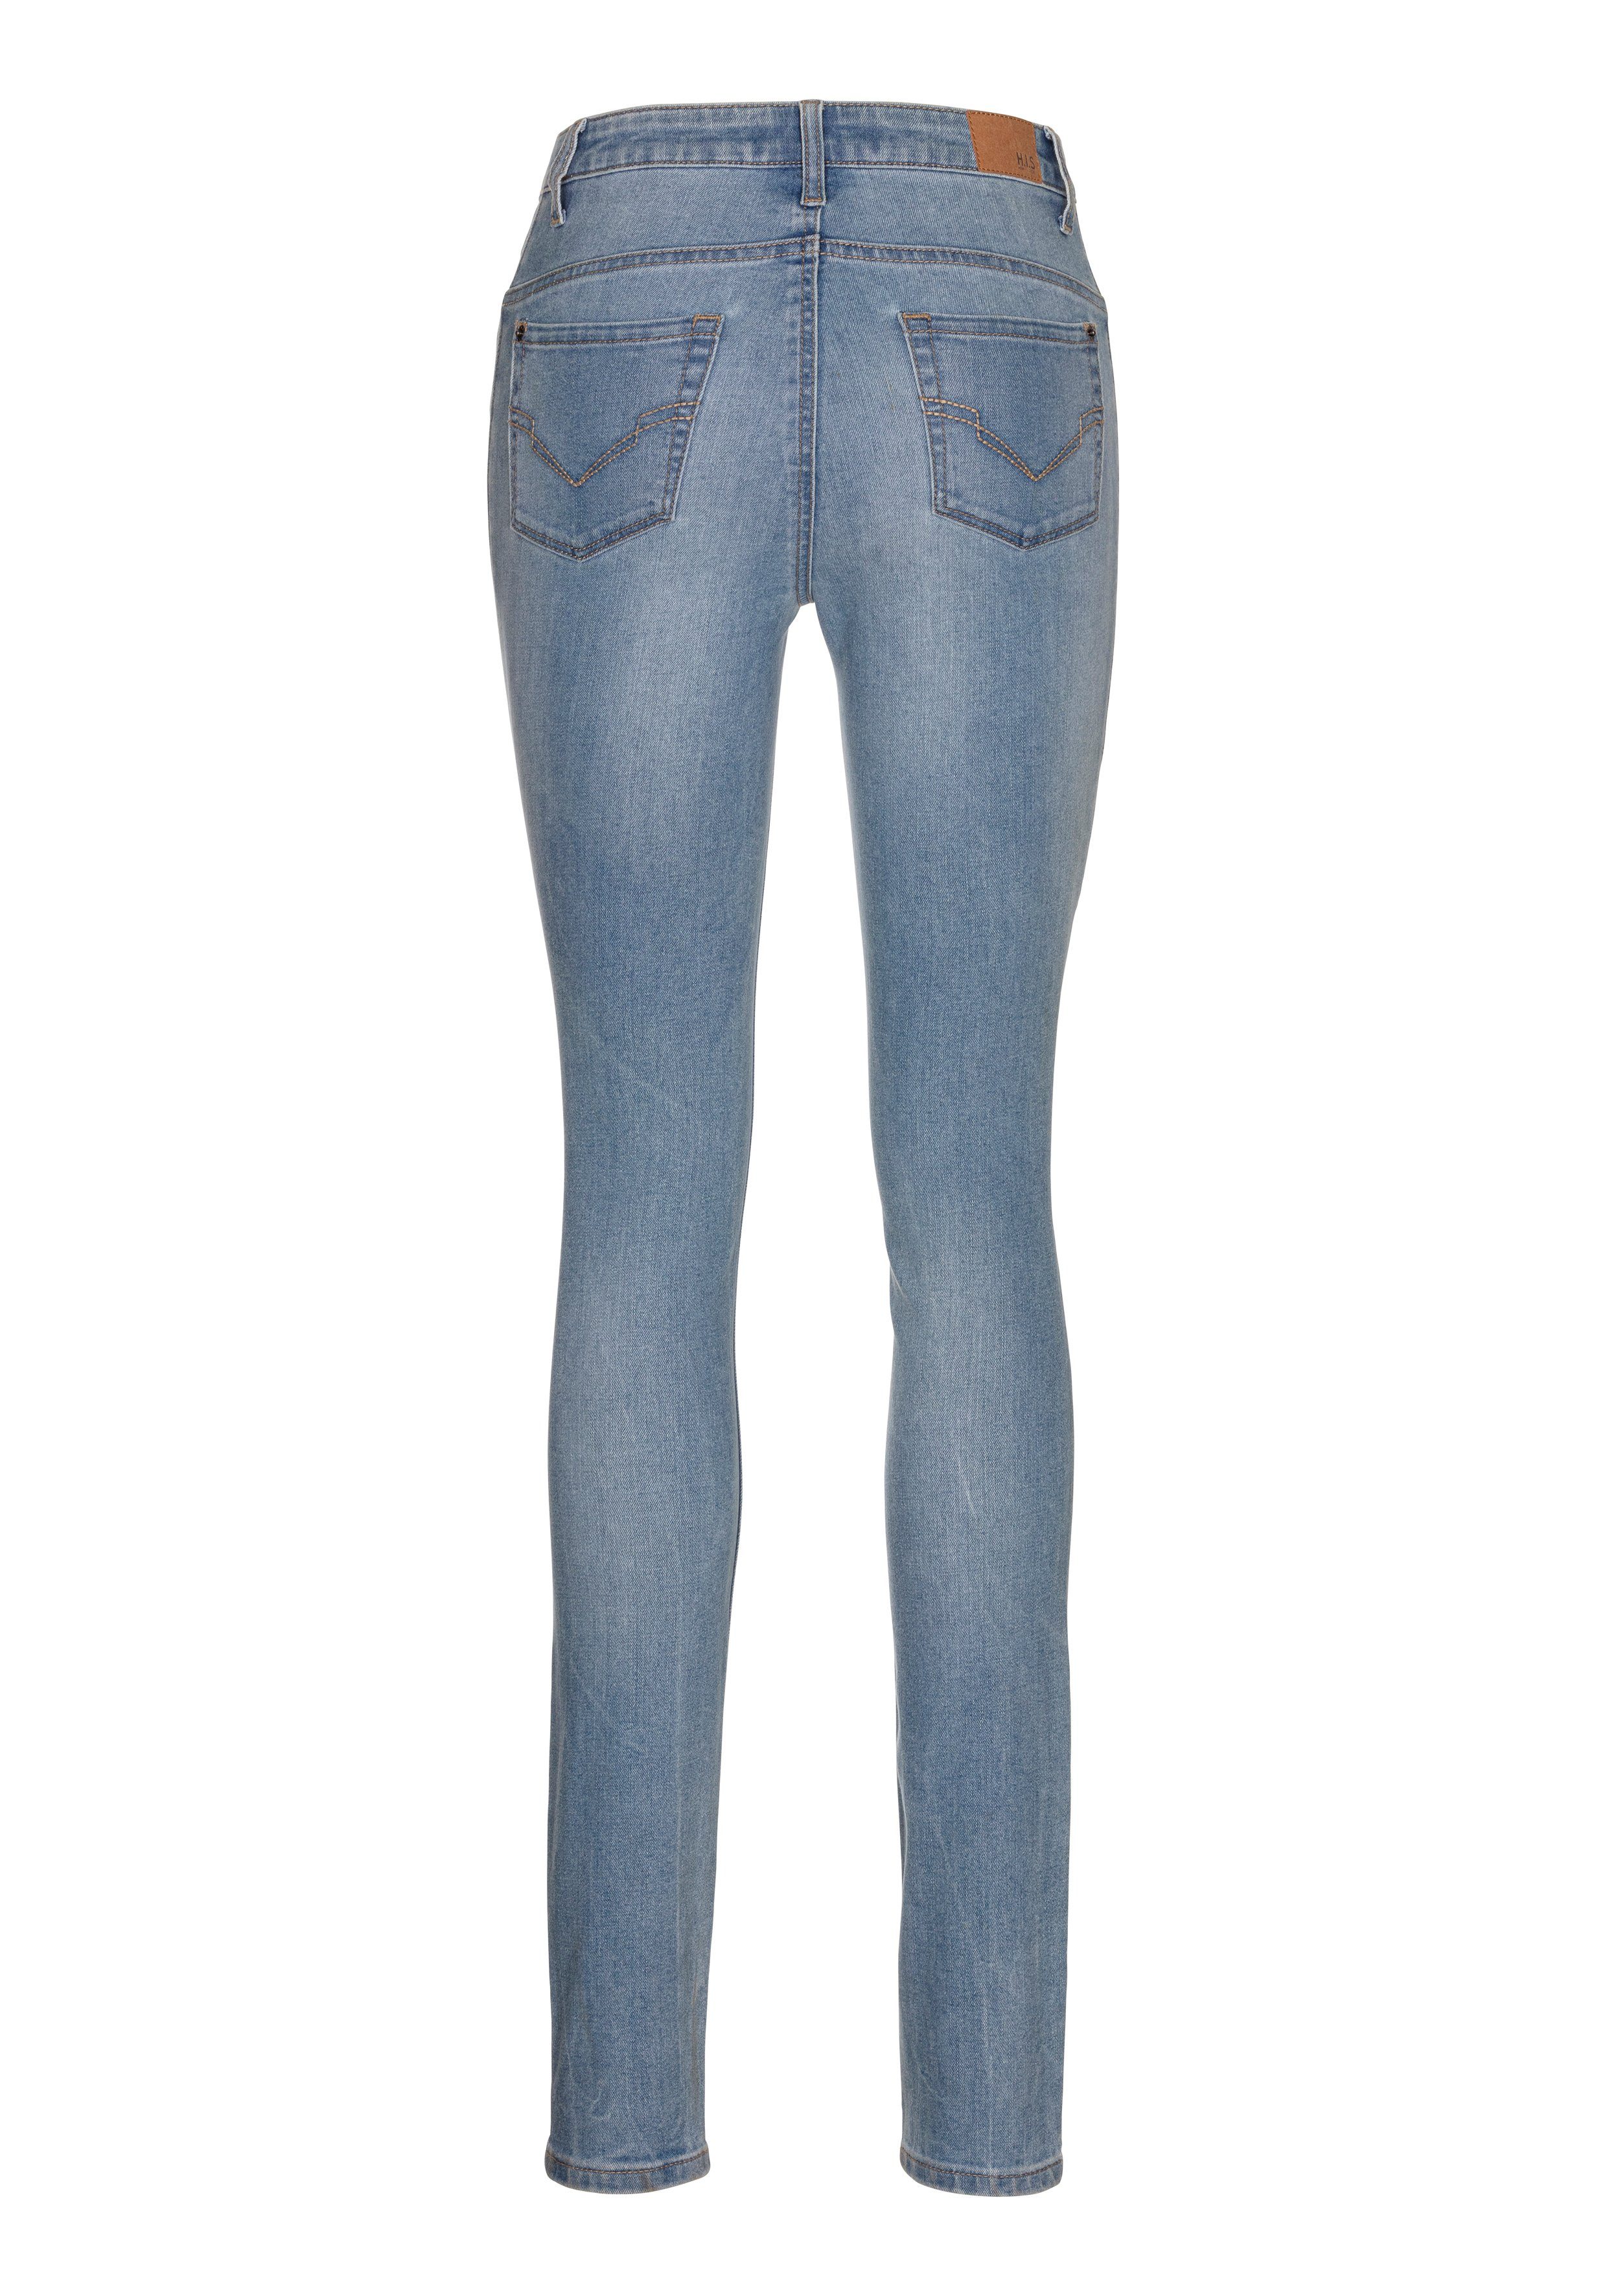 H.I.S 5-pocket jeans MacyHS ecologische waterbesparende productie door ozon wash